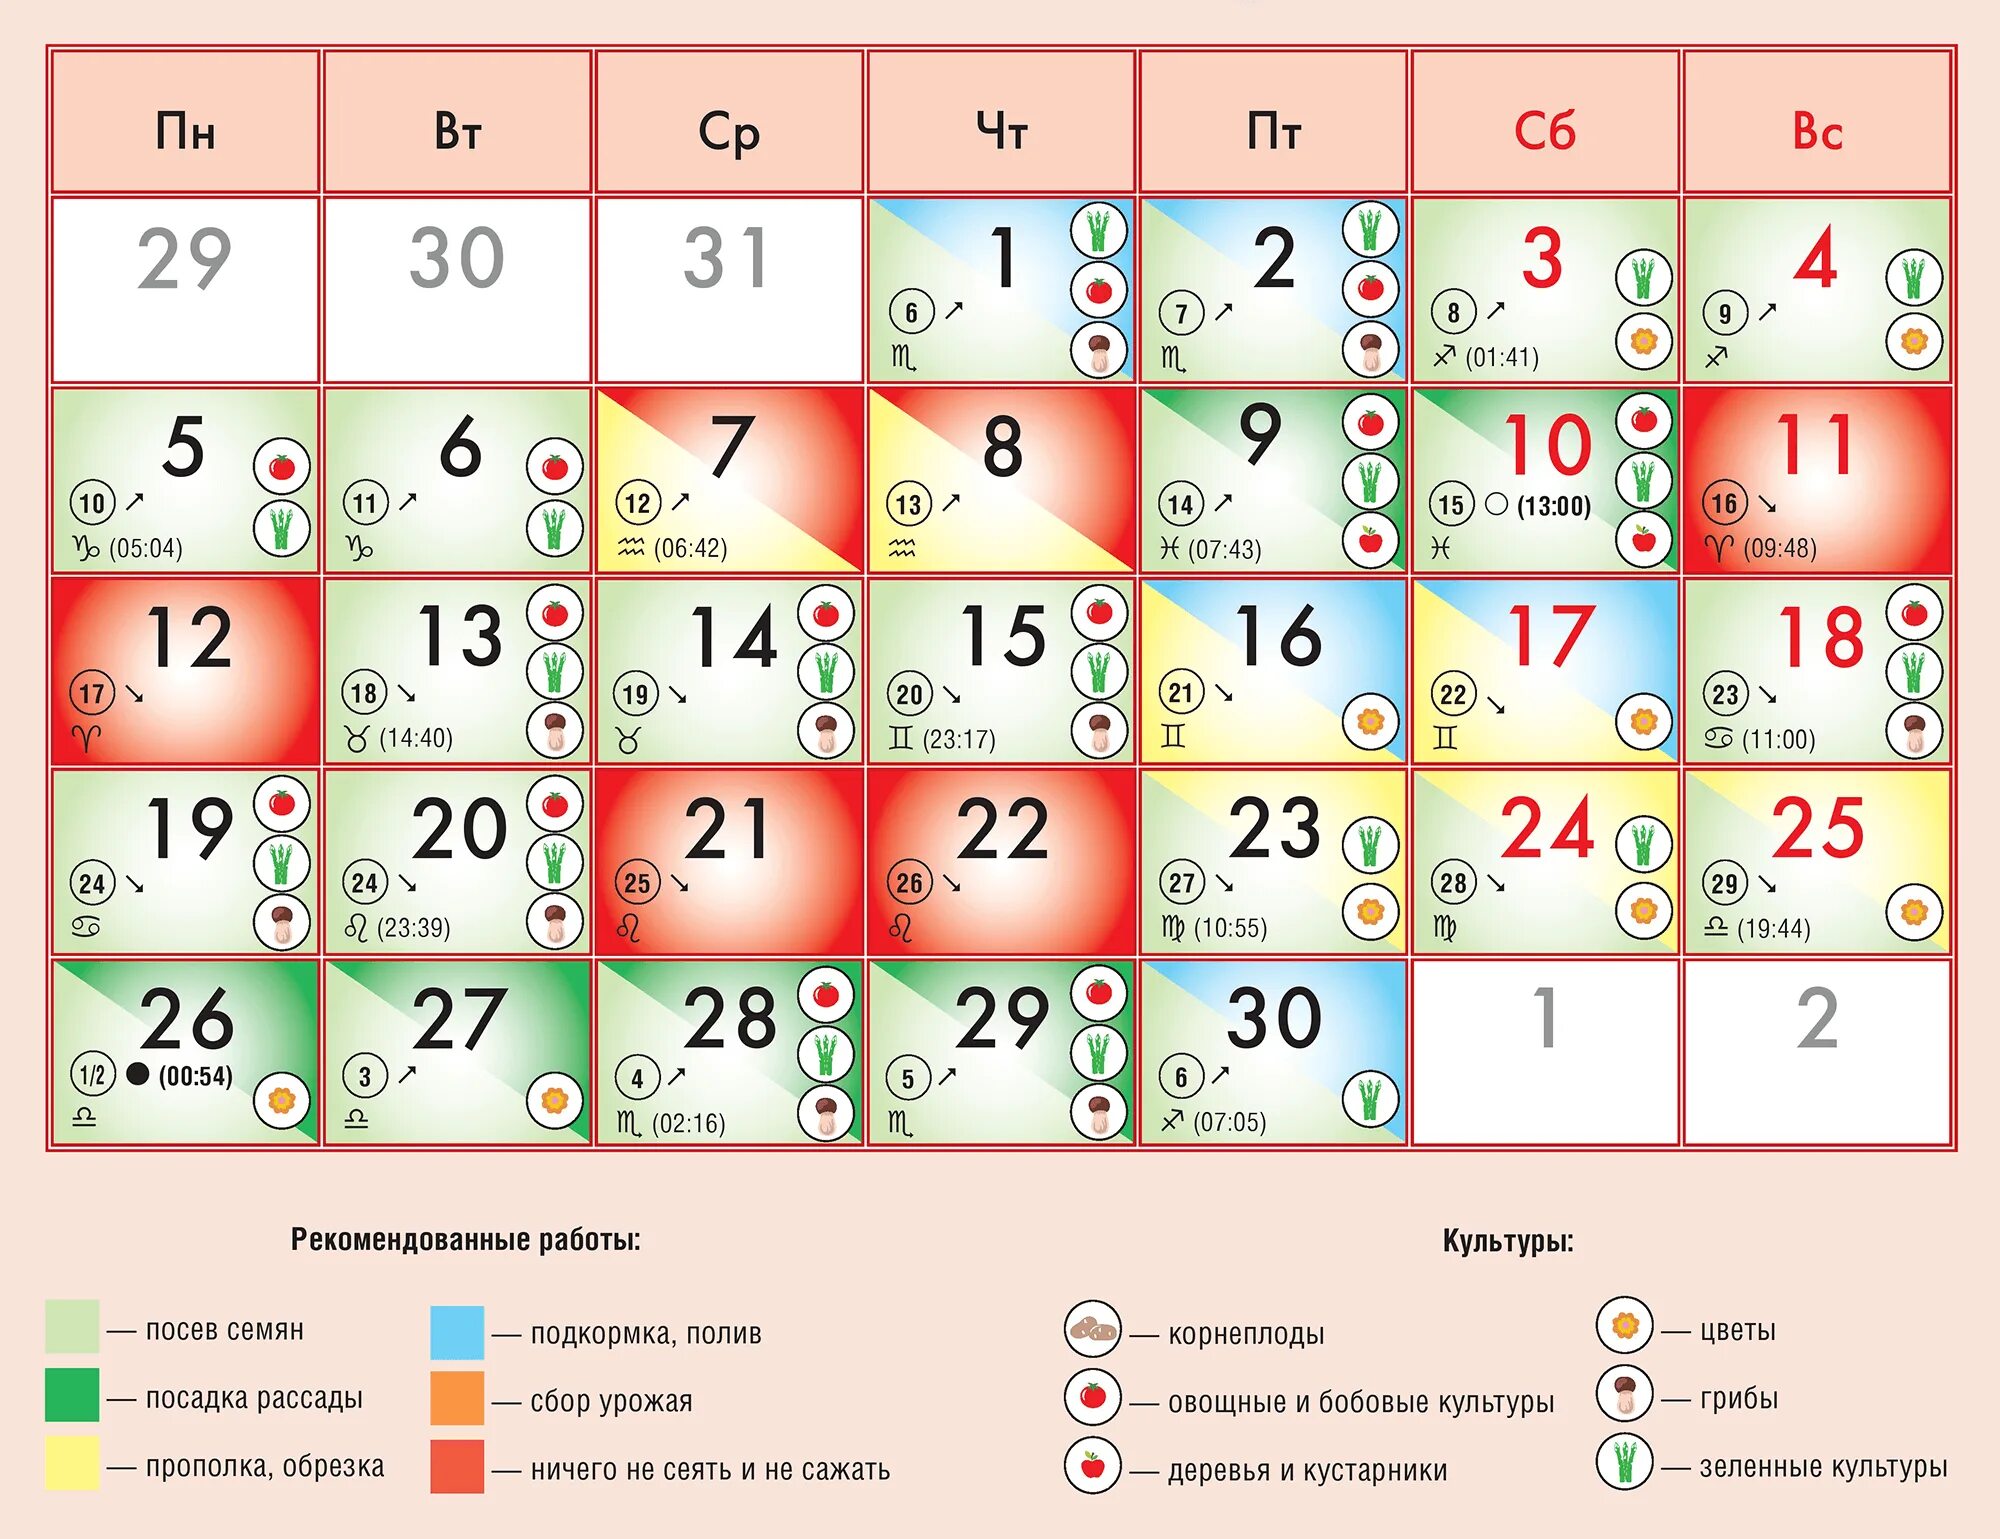 Лунный календарь на сентябрь 2022. Лунный календарь на сентябрь 2022 года. Календарь благоприятных дней для посадки. Благоприятные дни посадки в сентябре 2022 г.